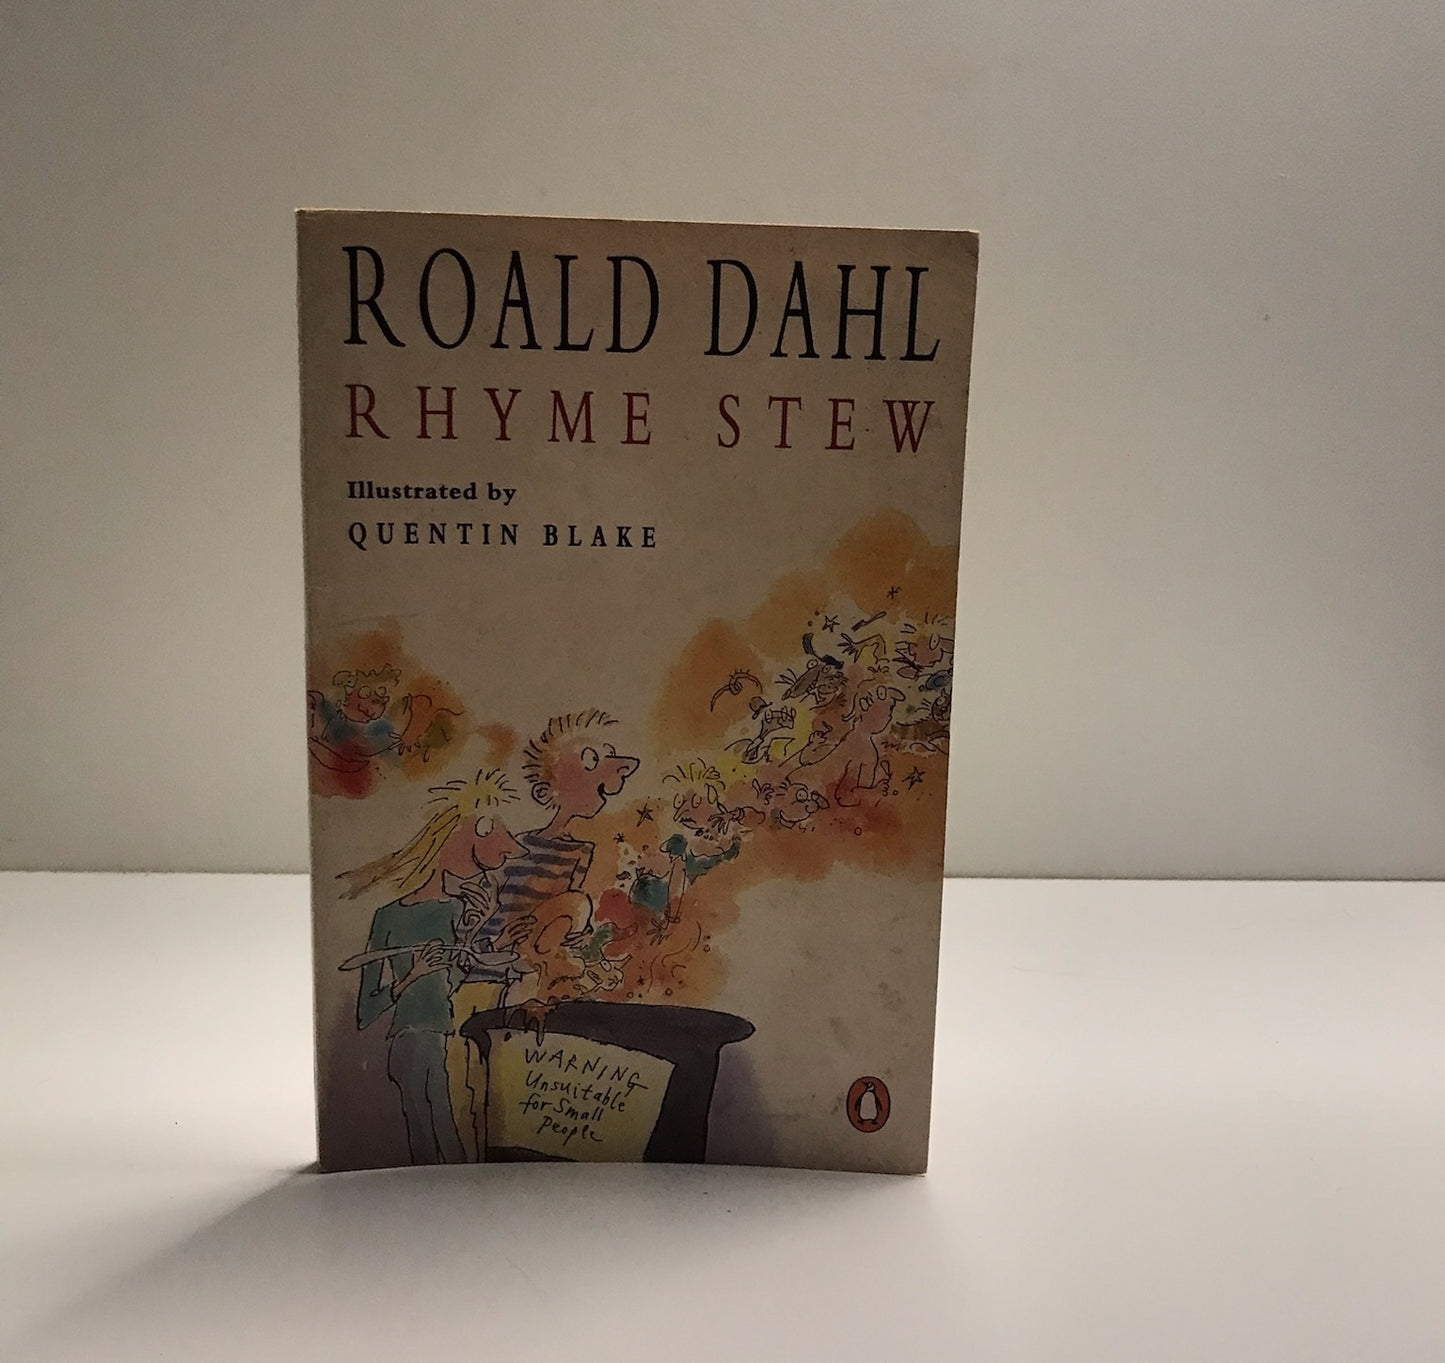 Rhyme stew - Roald Dahl